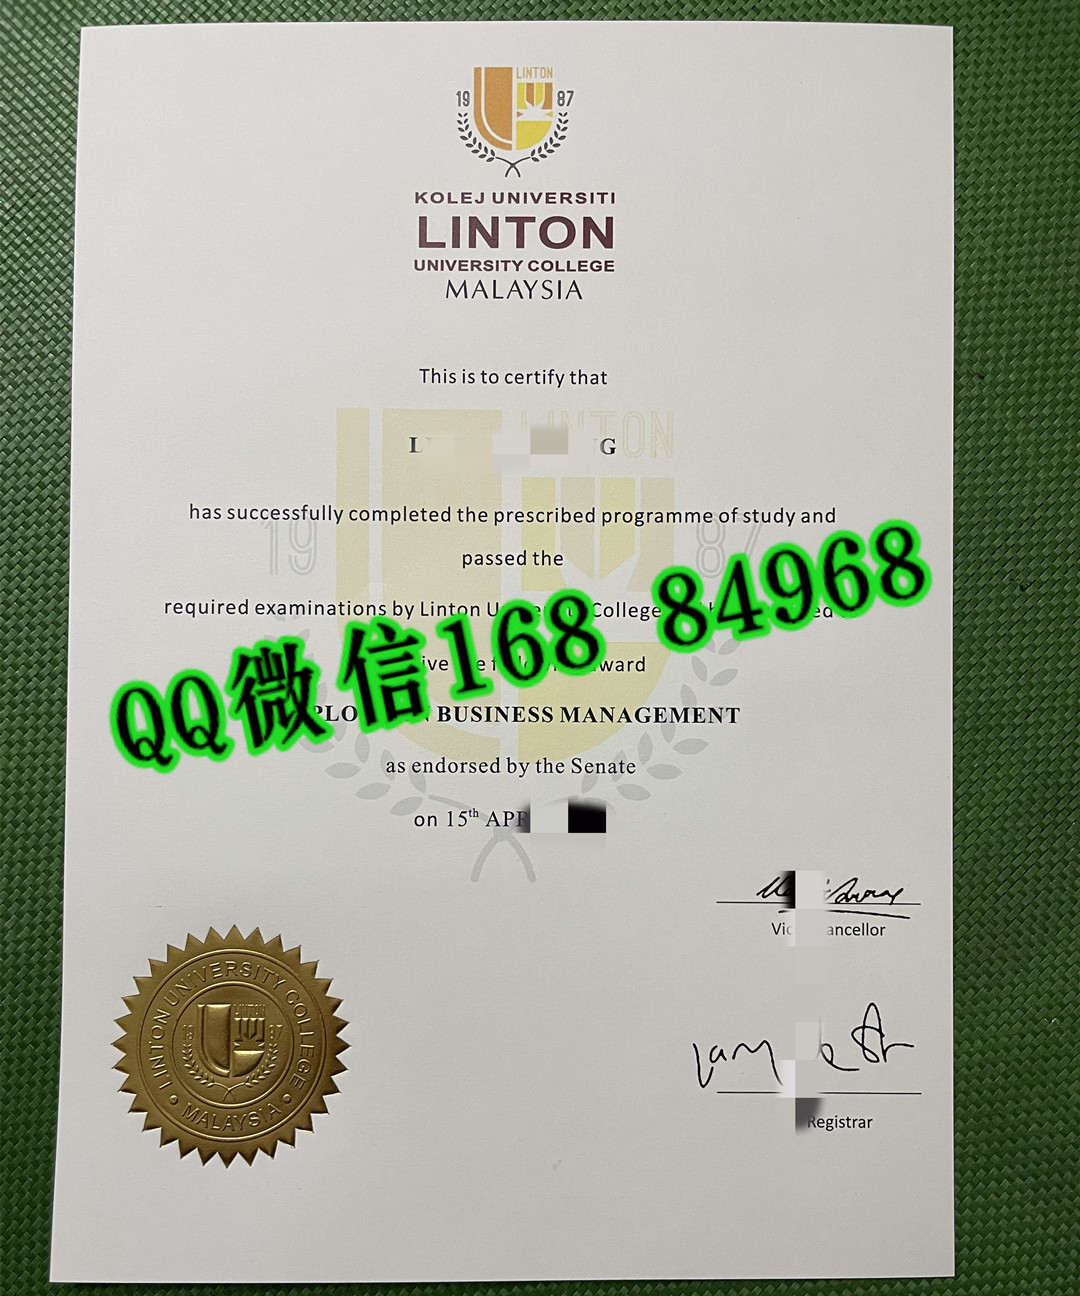 高清拍摄马来西亚林登大学毕业证照片，Linton University College diploma degree